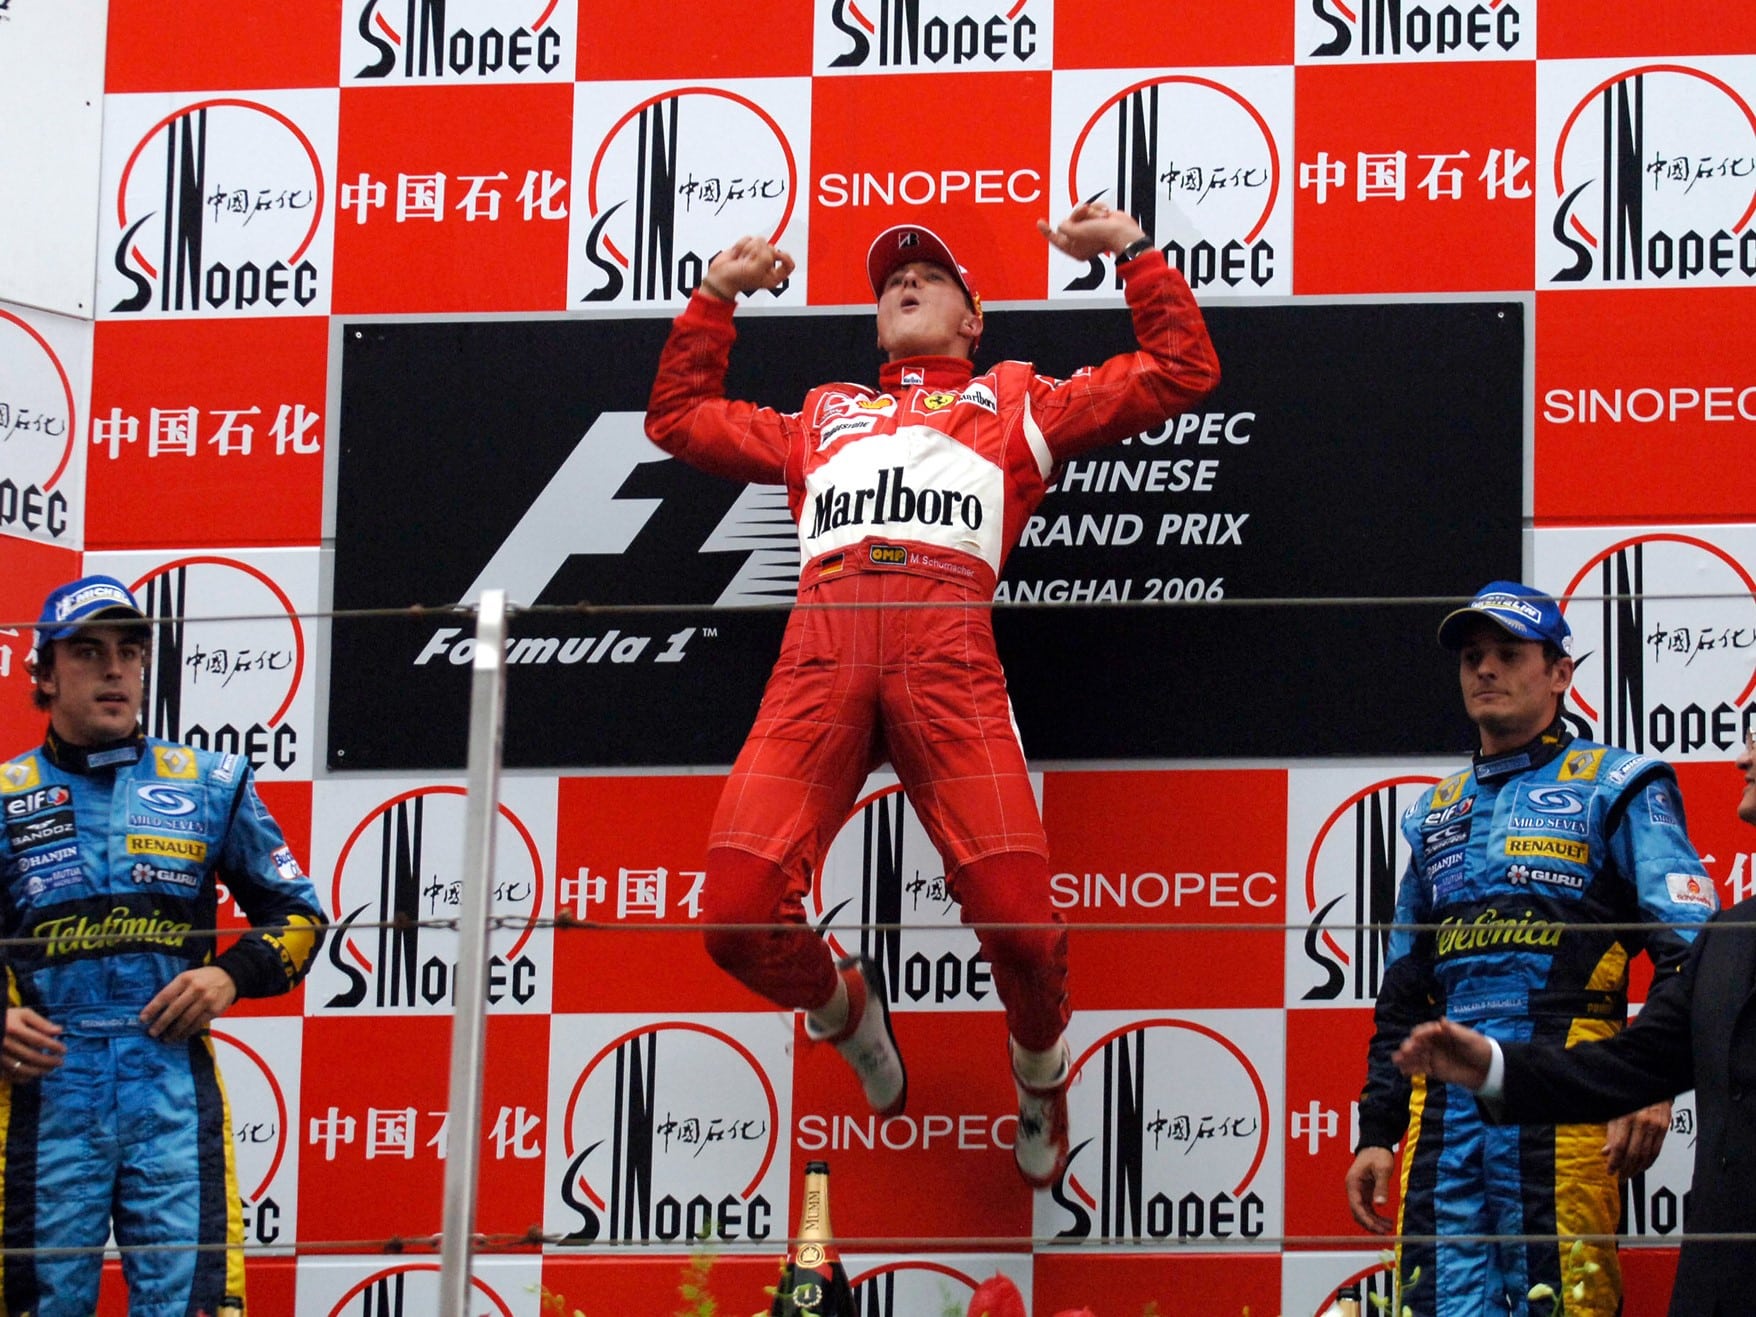 Michael Schumacher esultanza Shanghai 2006 1